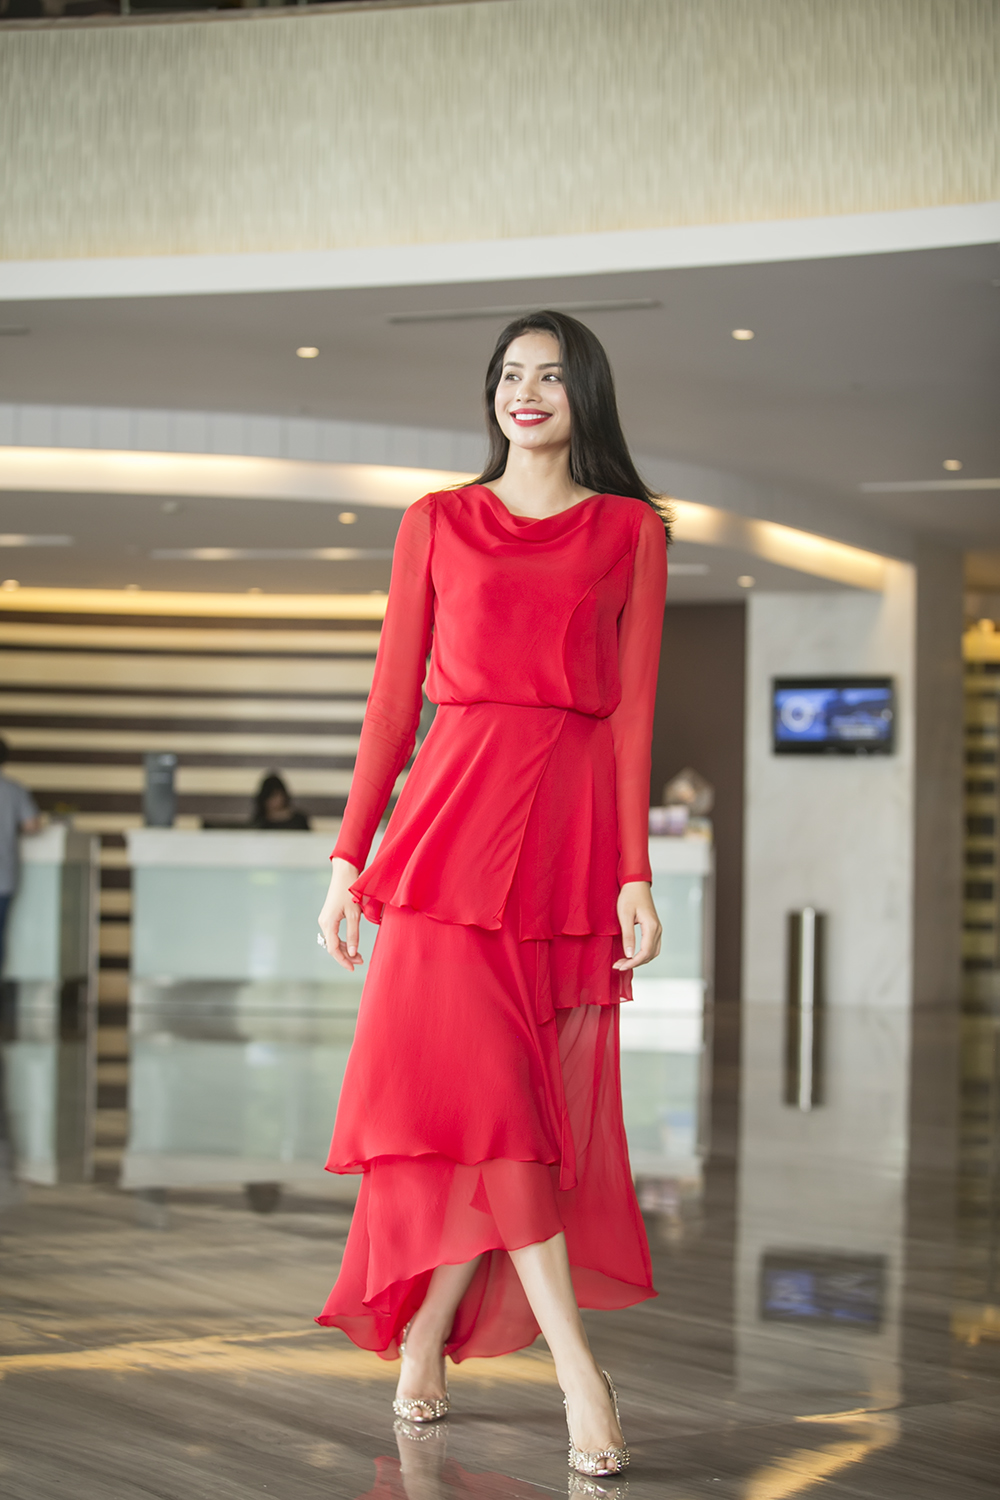  Người hâm mộ đang rất vui mừng khi hay tin, Hoa hậu Hoàn vũ Việt Nam 2015, Phạm Hương vừa được tạp chí của Mỹ, The Richest đã thống kê những người phụ nữ đẹp nhất của 50 quốc gia trên khắp thế giới.